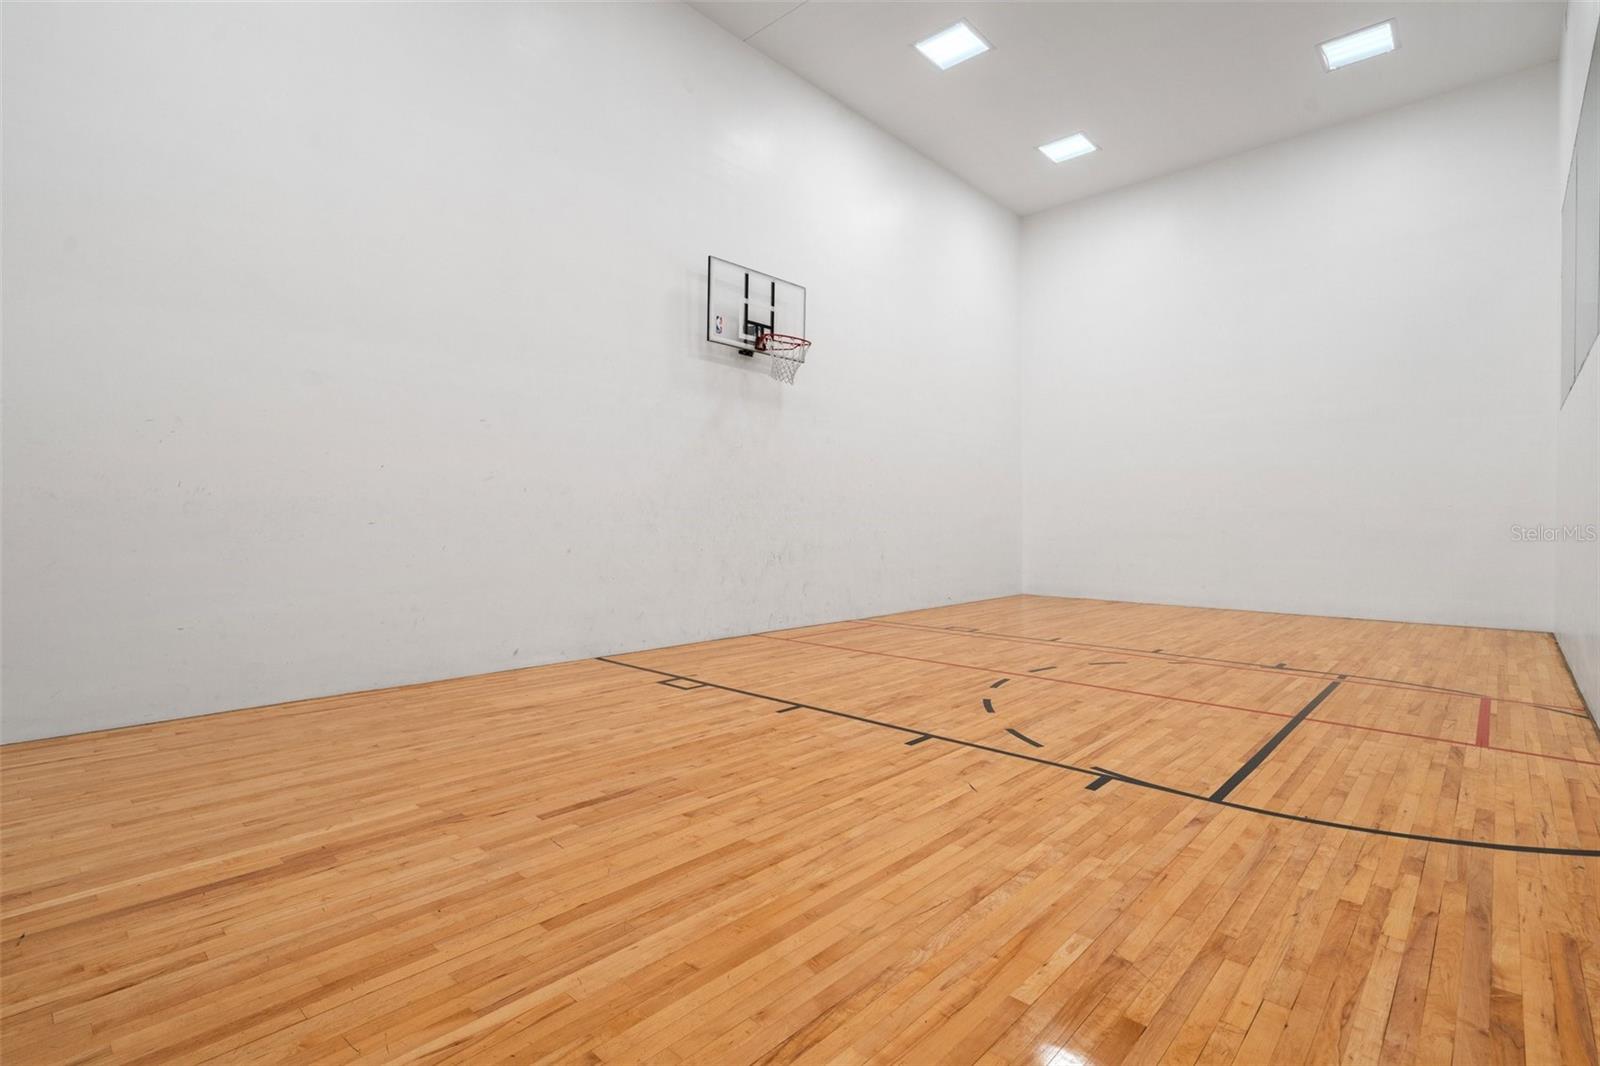 Basketball/Raquet ball court